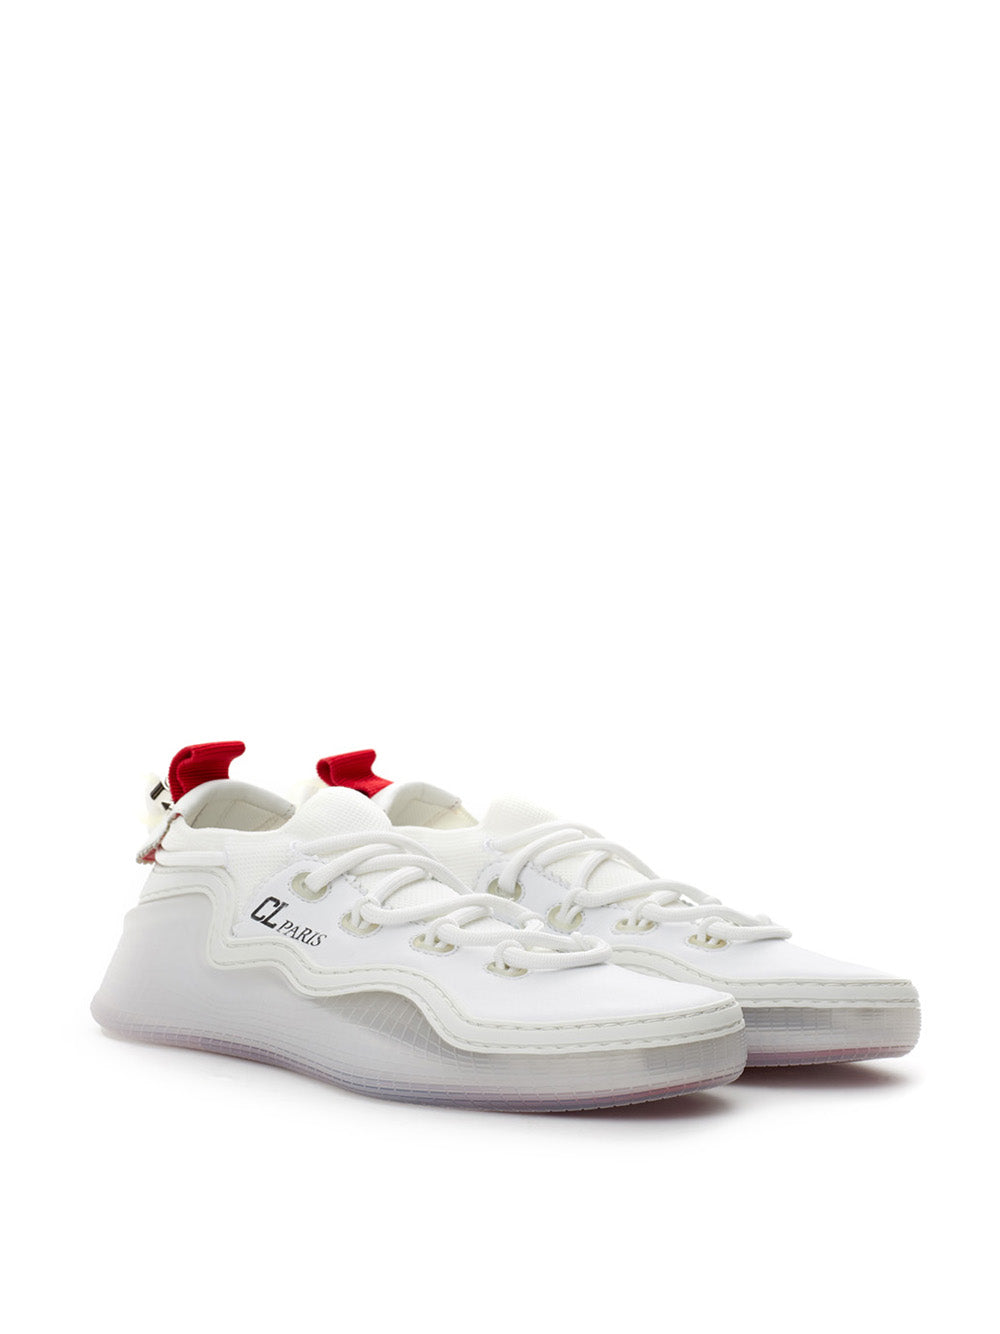 Christian Louboutin white leather Arpoador sneakers